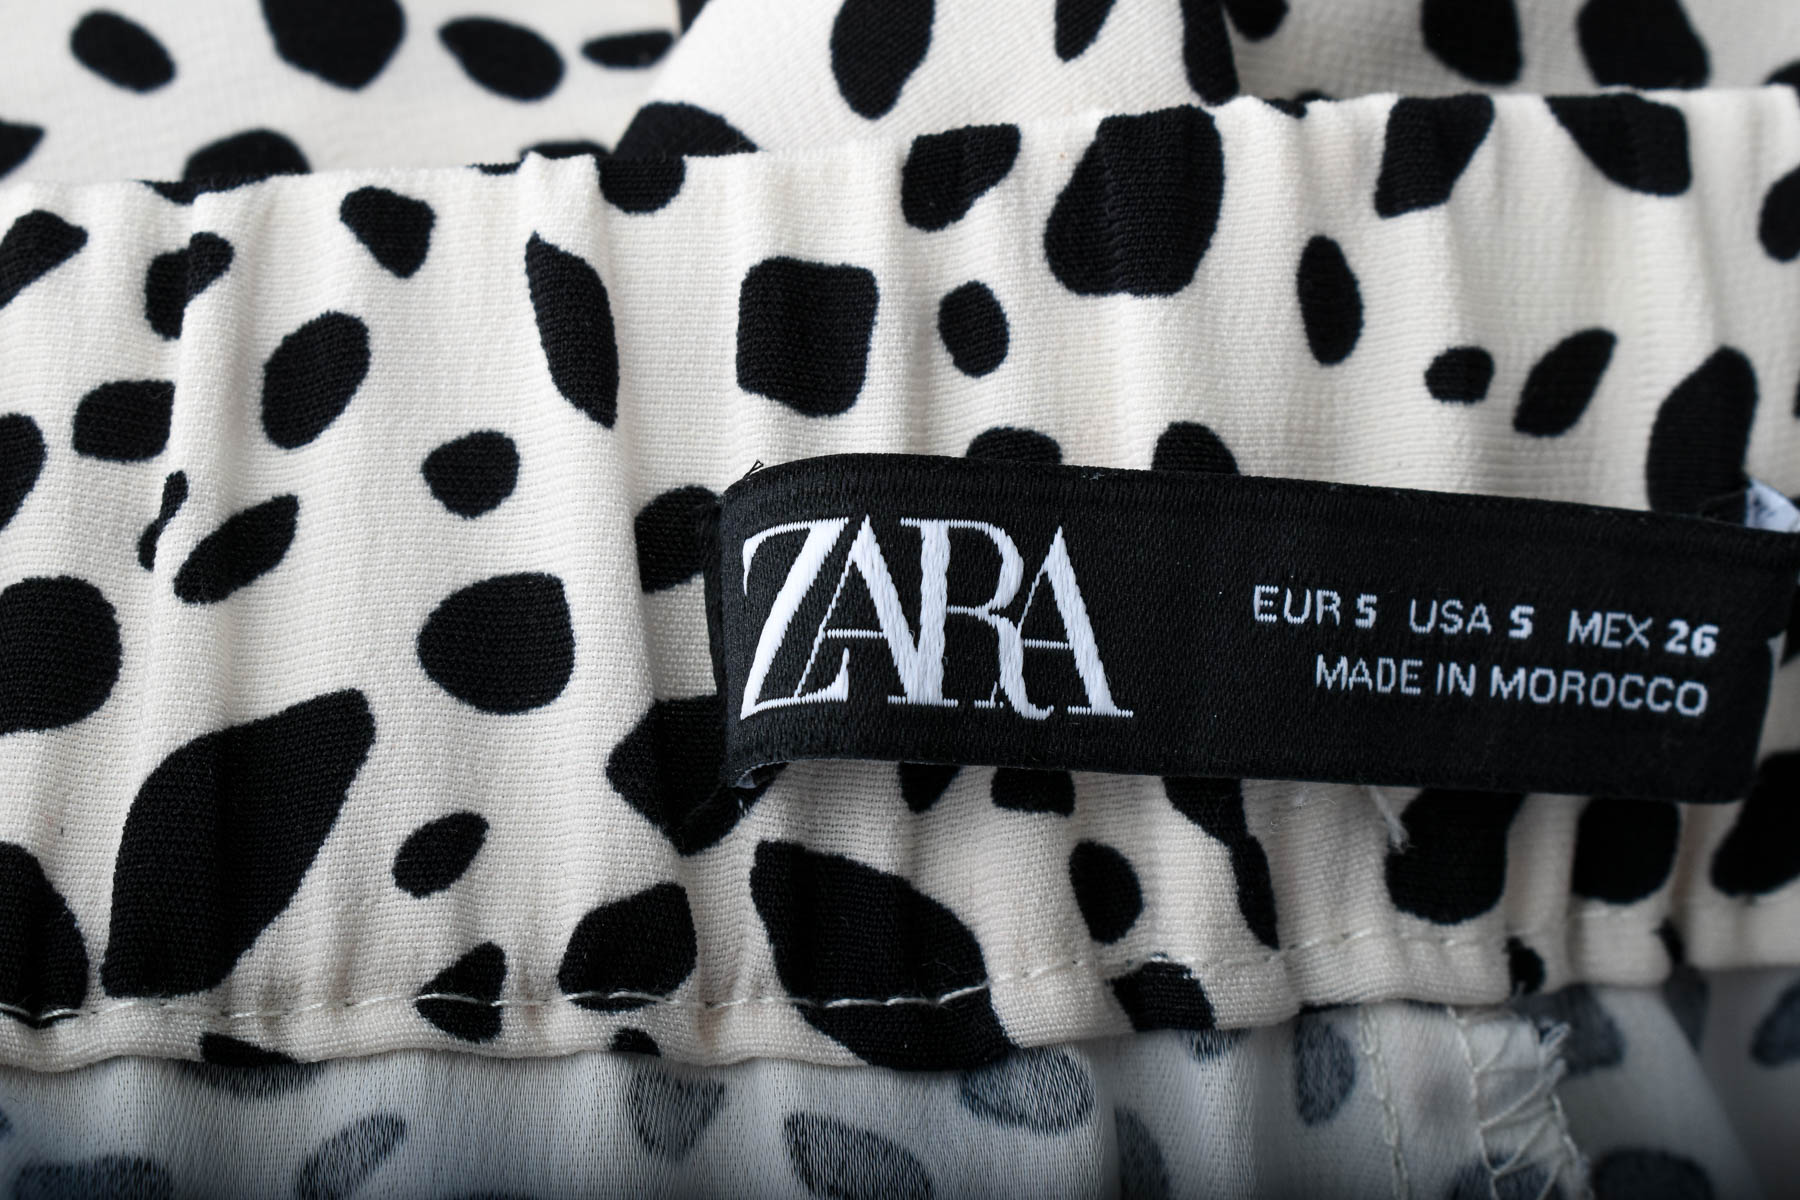 Women's trousers - ZARA - 2